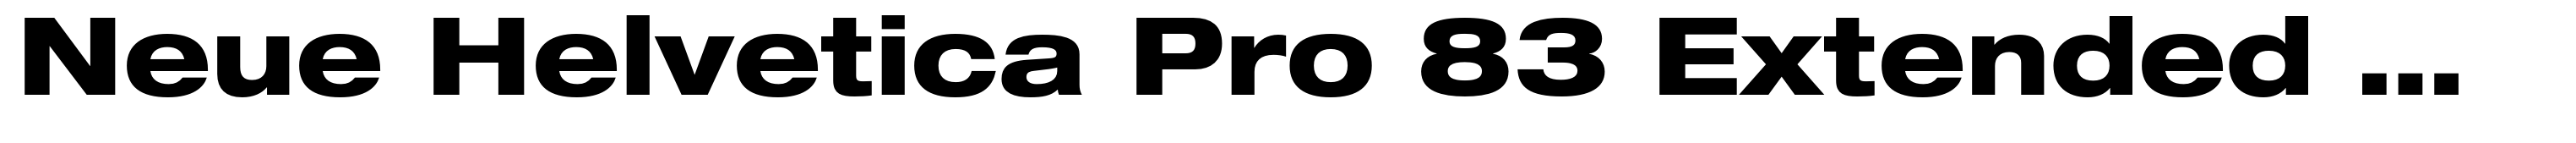 Neue Helvetica Pro 83 Extended Heavy